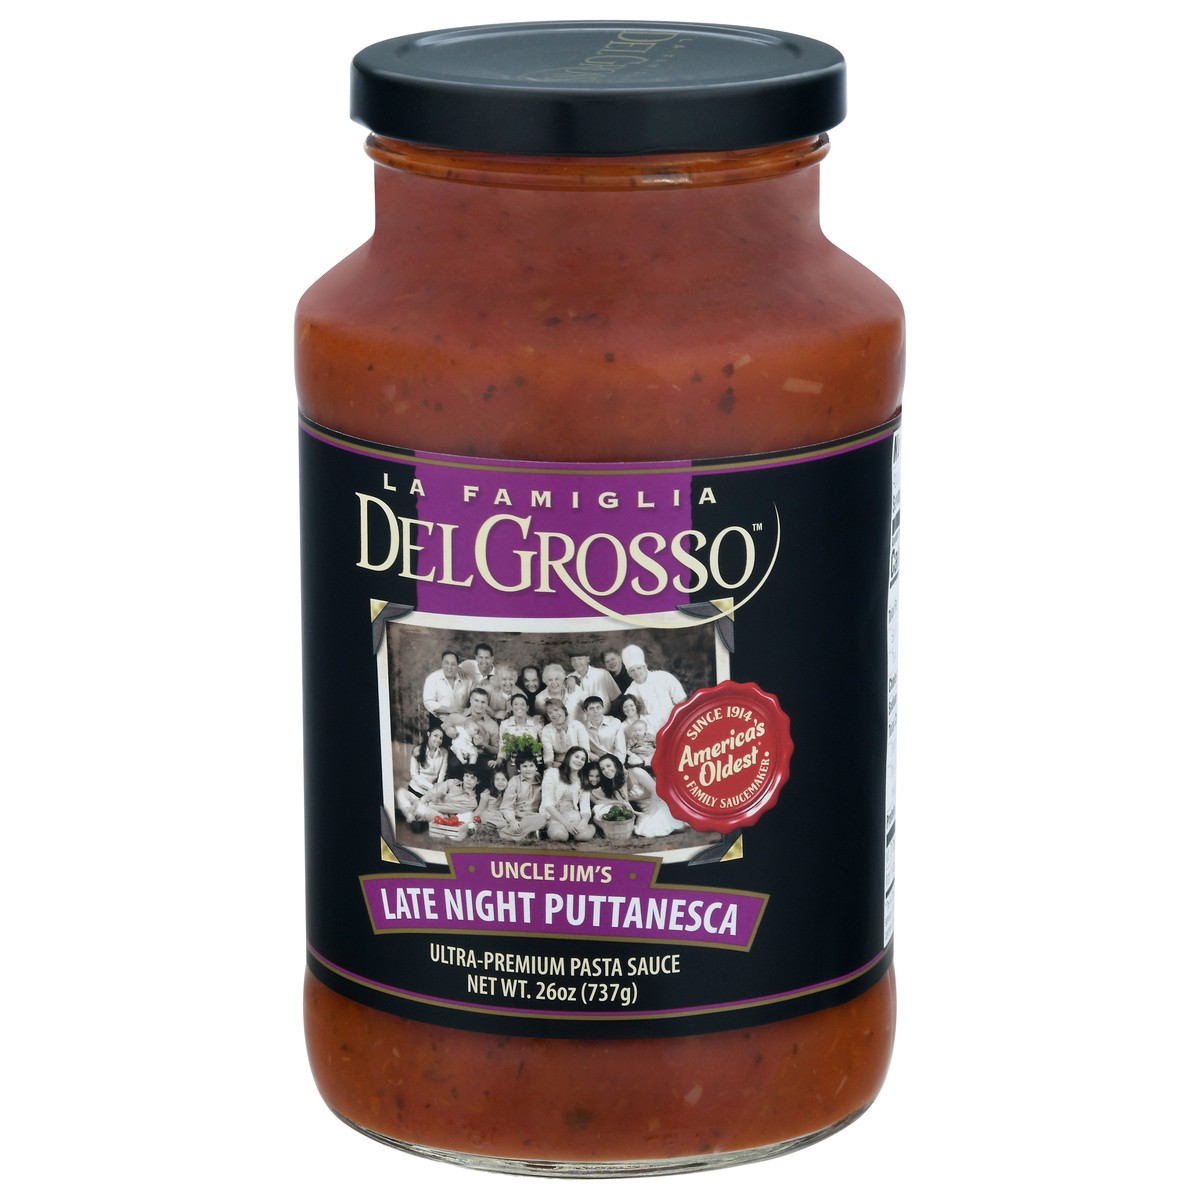 slide 2 of 11, DelGrosso Uncle Jim's Late Night Puttanesca Ultra-Premium Pasta Sauce 26 oz, 26 oz